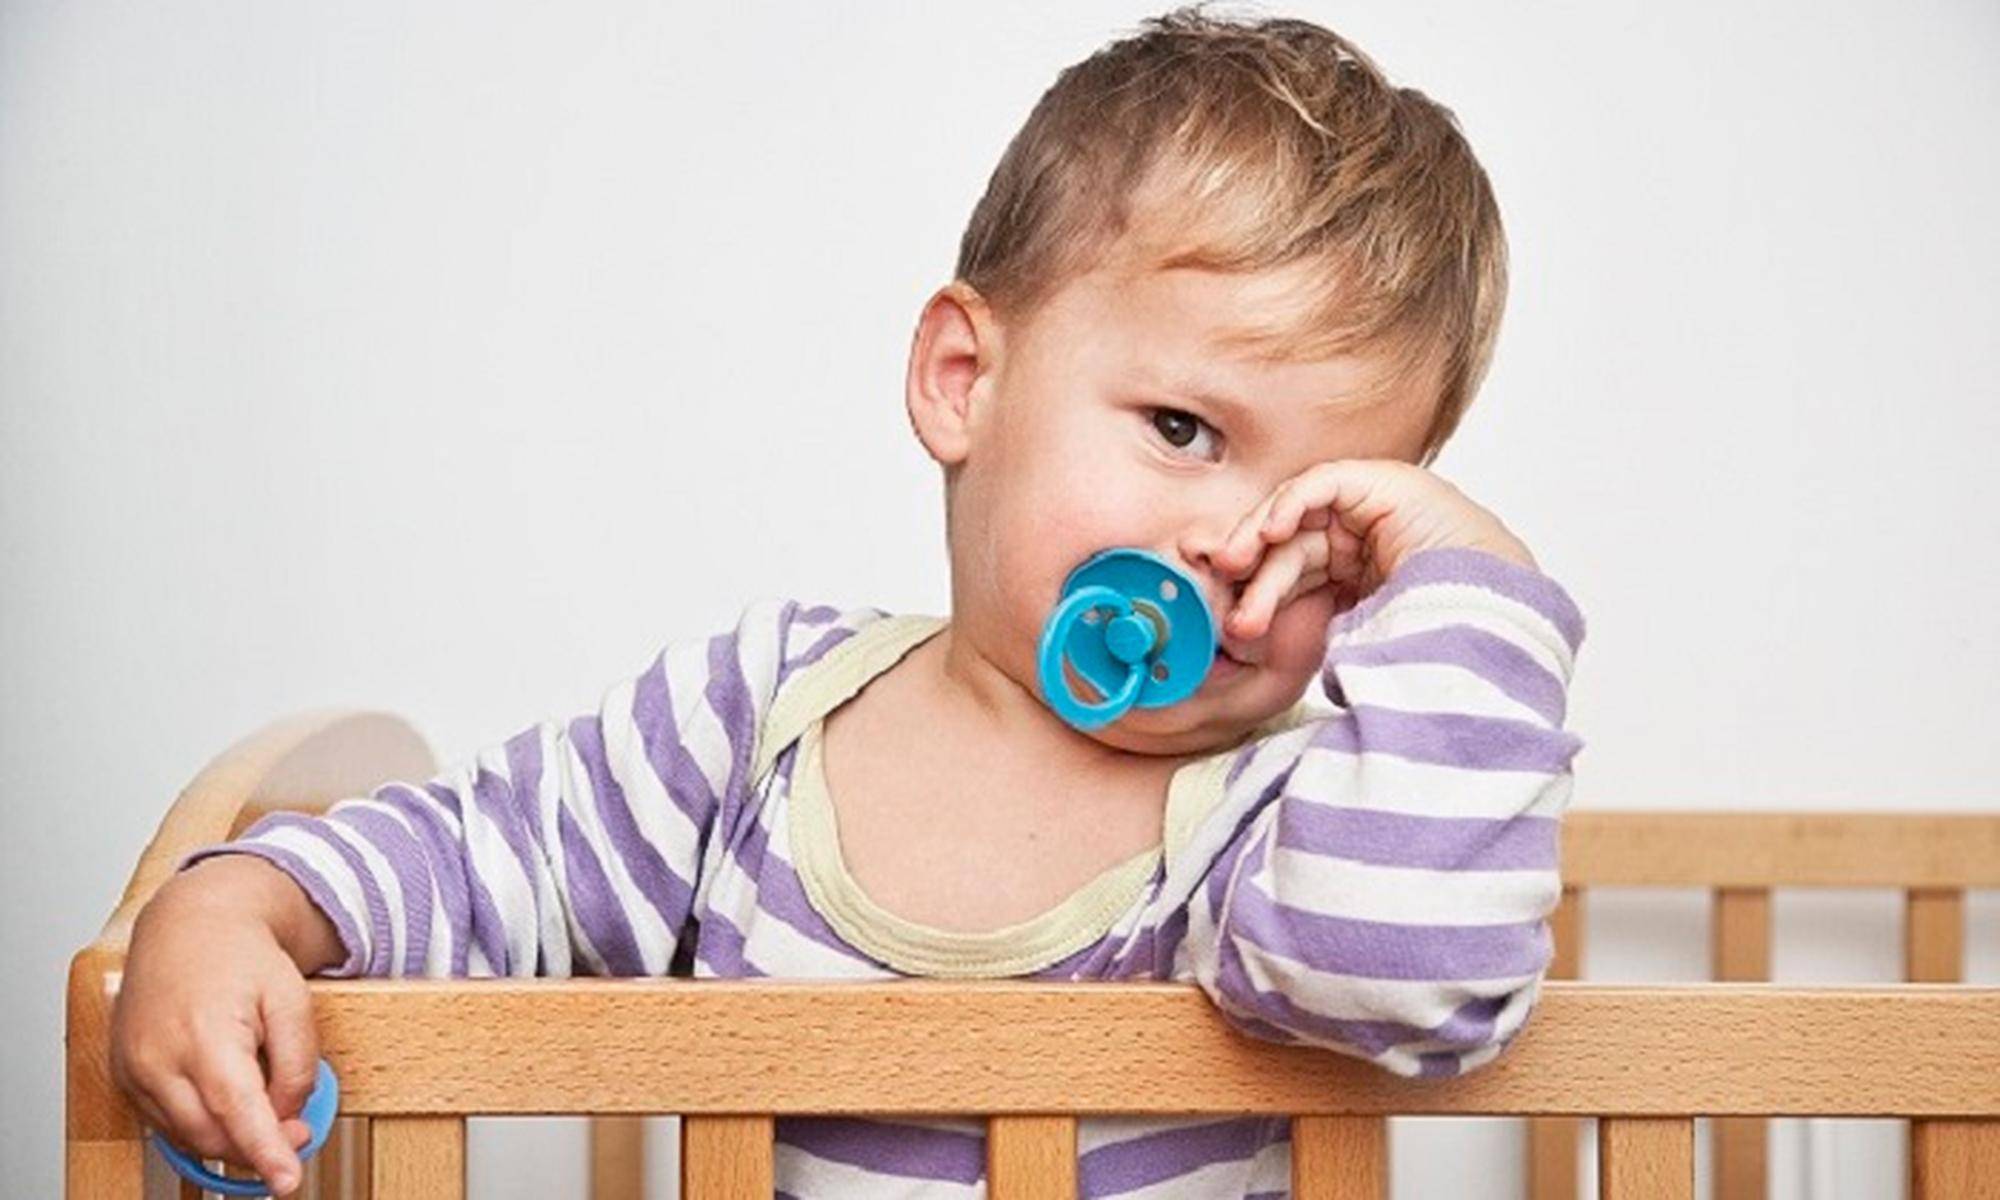 Как отучить  ребёнка от соски правильно. в каком возрасте лучше отучать ребёнка от соски без плача и травм